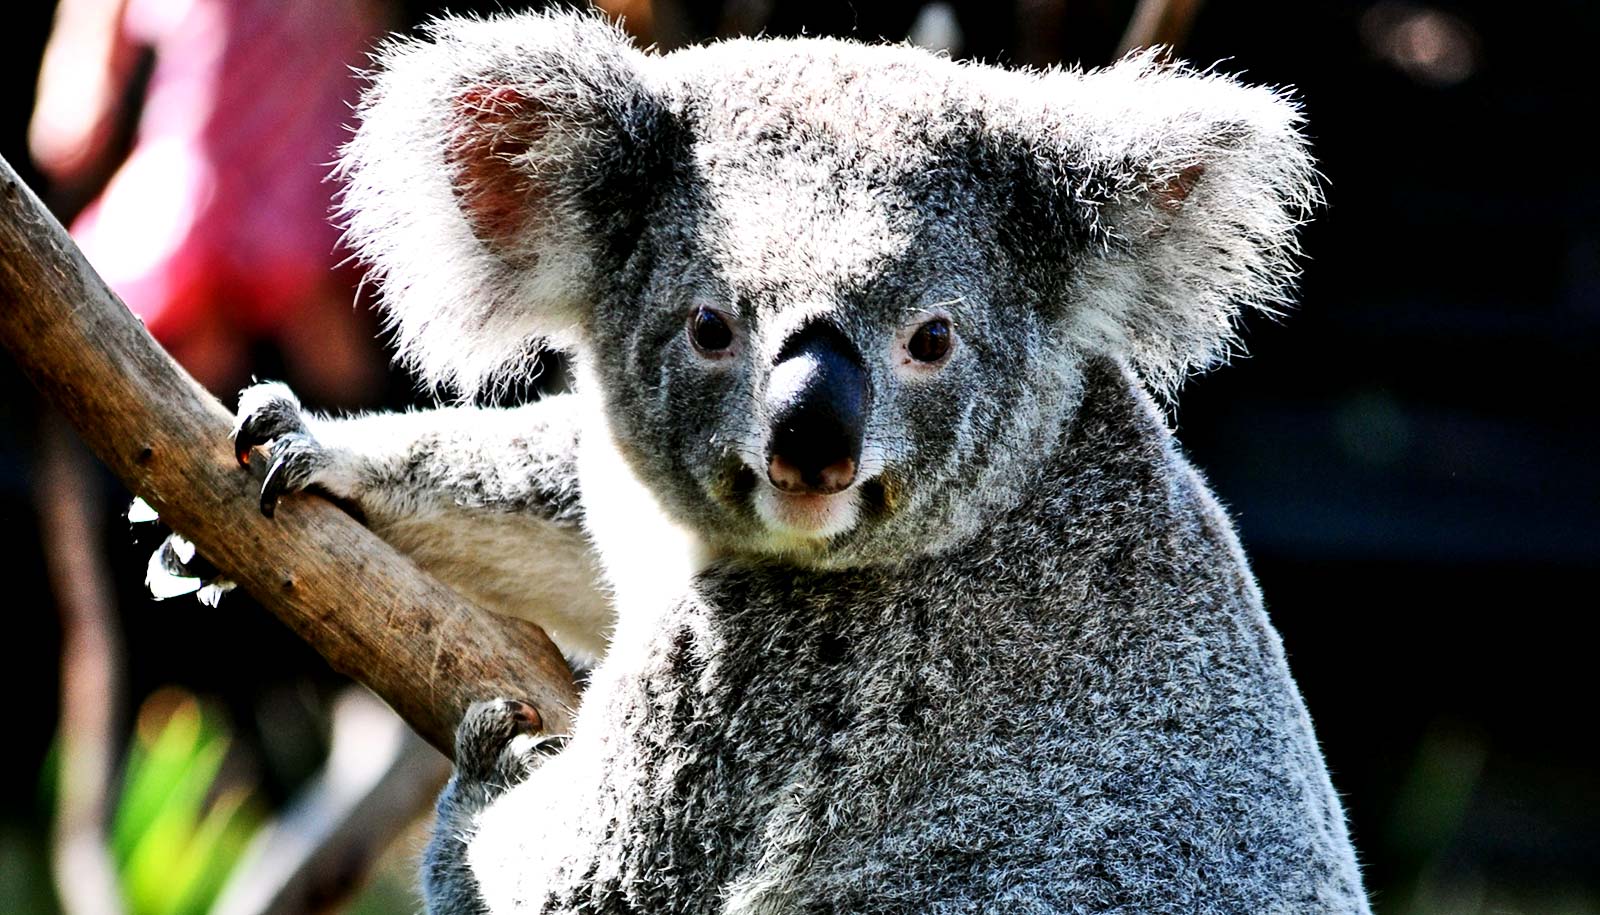 Cute koala, marsupial, endangered species, furry, looking at